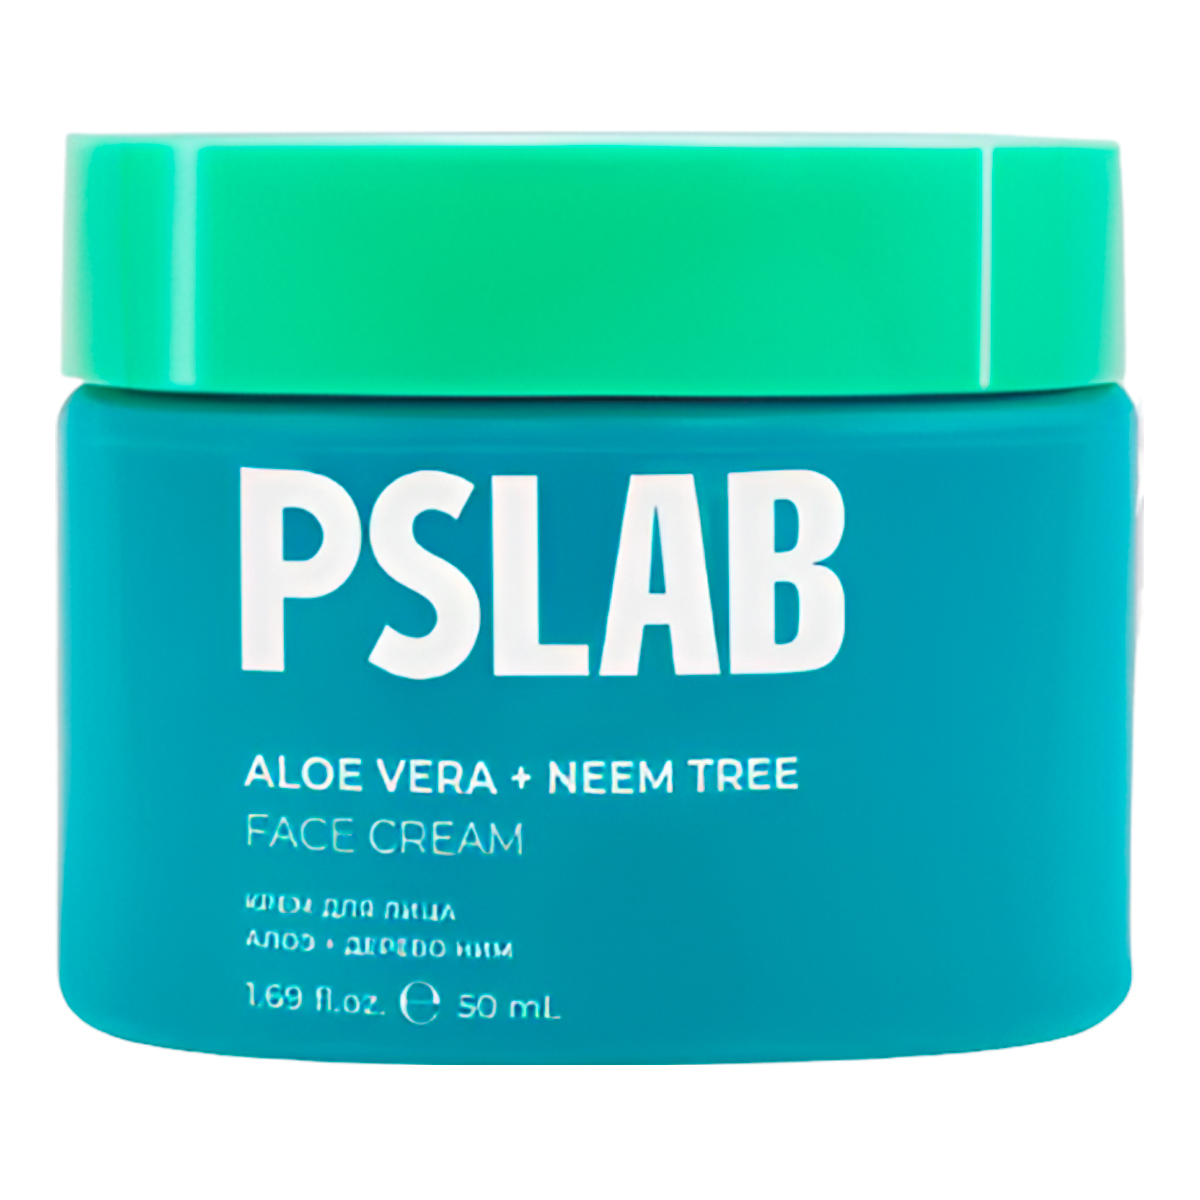 Крем для лица PS.LAB Aloe Vera + Neem Tree Face Cream с экстрактом алоэ и деревом ним edwin jagger крем для бритья aloe vera 75